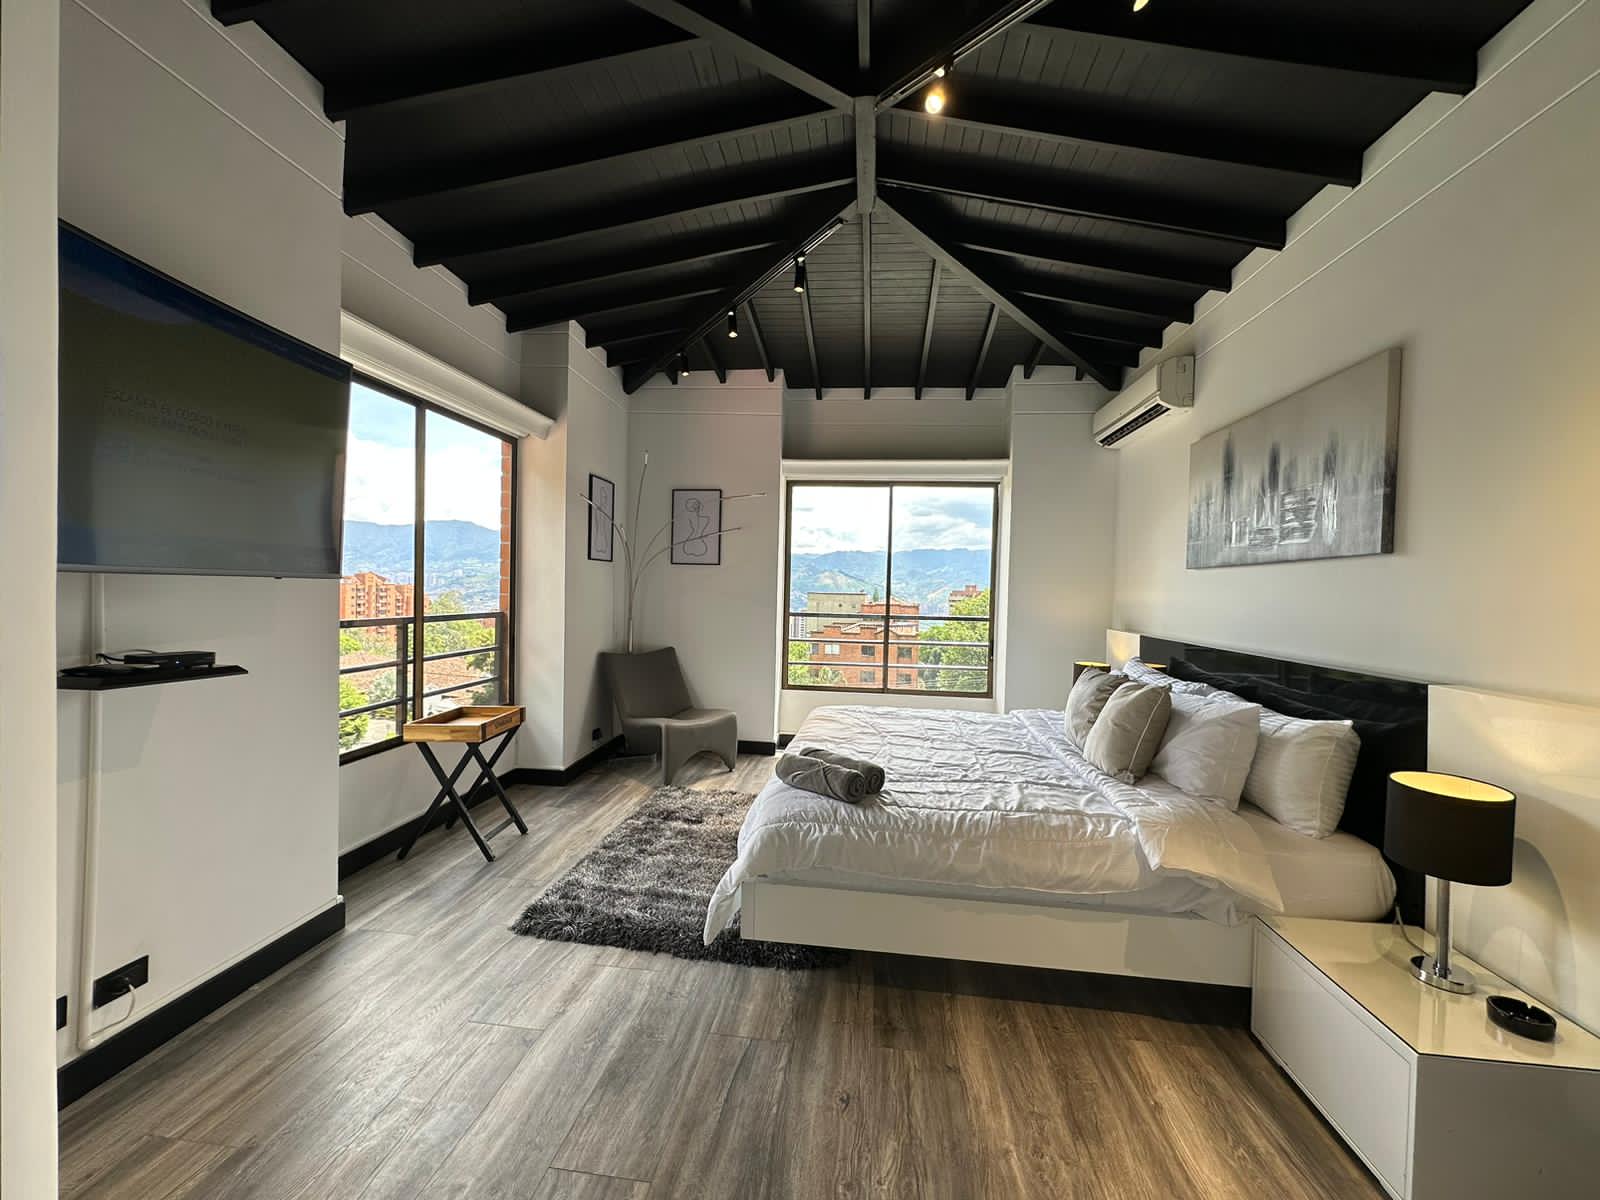 Cuota Baja El Poblado Comunidad Cerrada 5 BR Dos Niveles Casa Elegible Para Airbnb; Jacuzzi, A / C, y Espacio Terraza